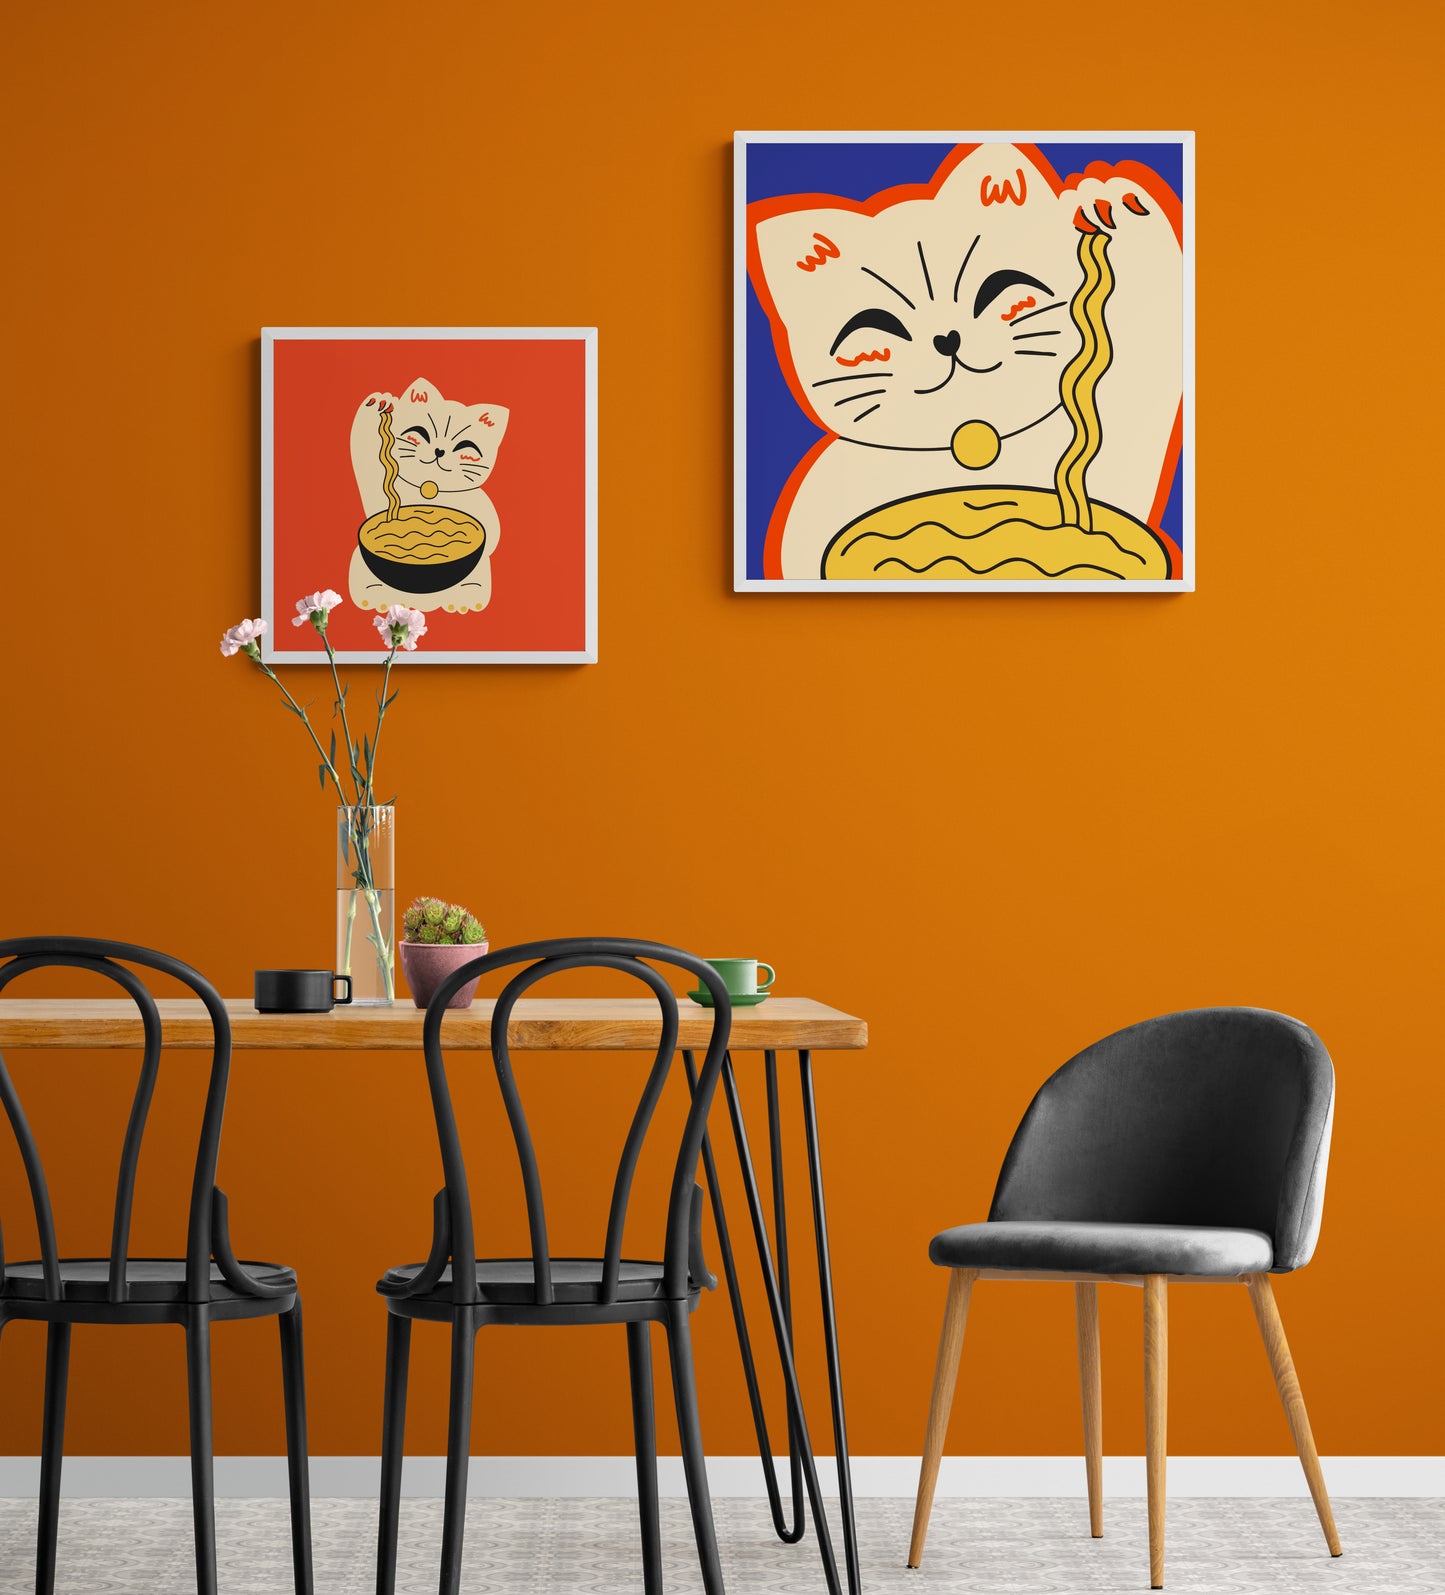 Dans une salle a manger les murs sont orange au centre une table et des chaise au style industrielle. deux tableaux de chat maneki-neko sont accroché au mur